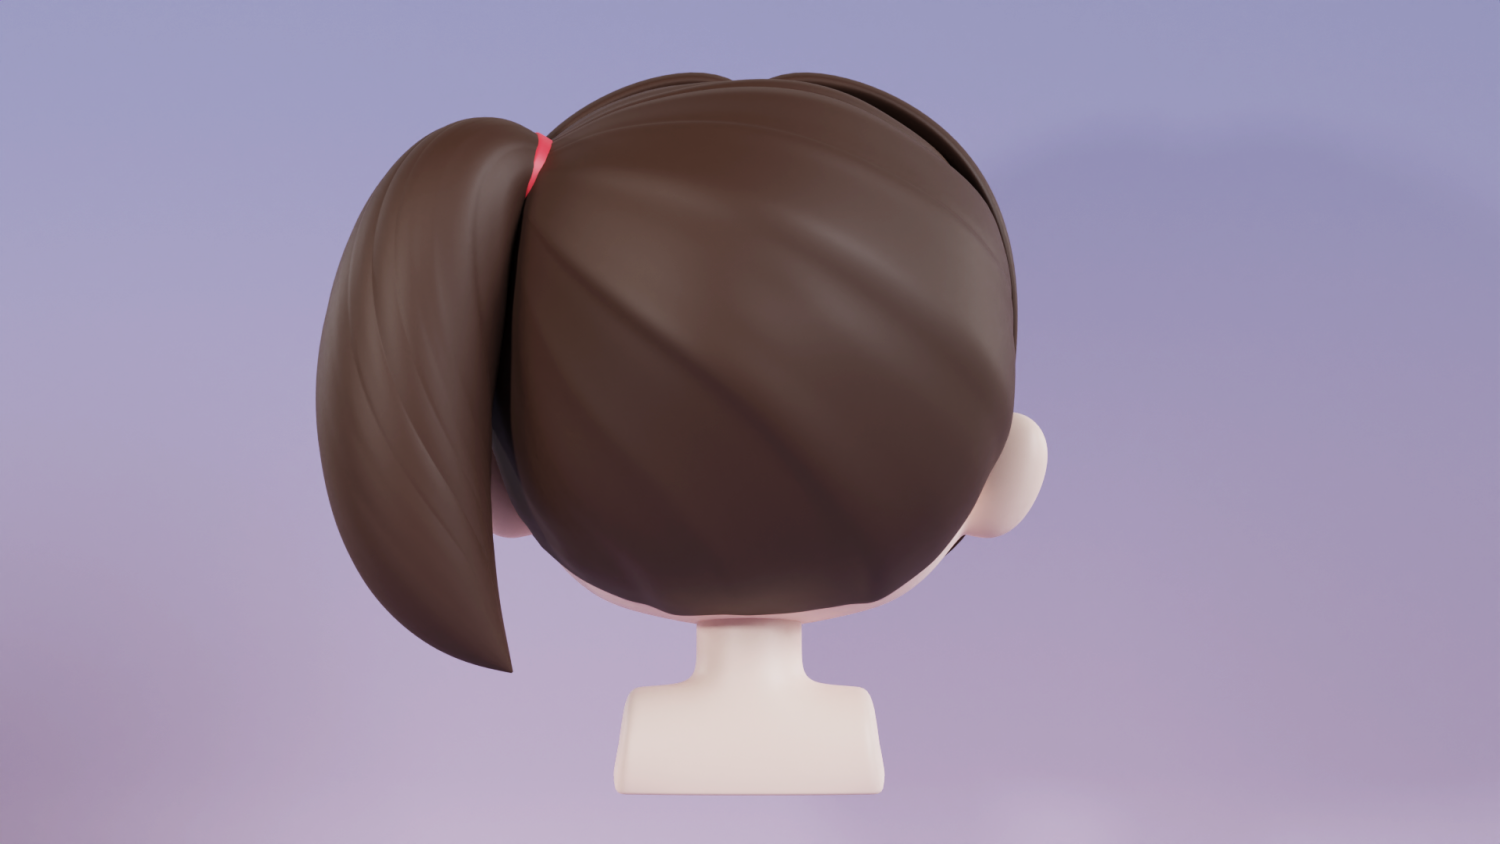 3D model Female Hair - TurboSquid 2034198